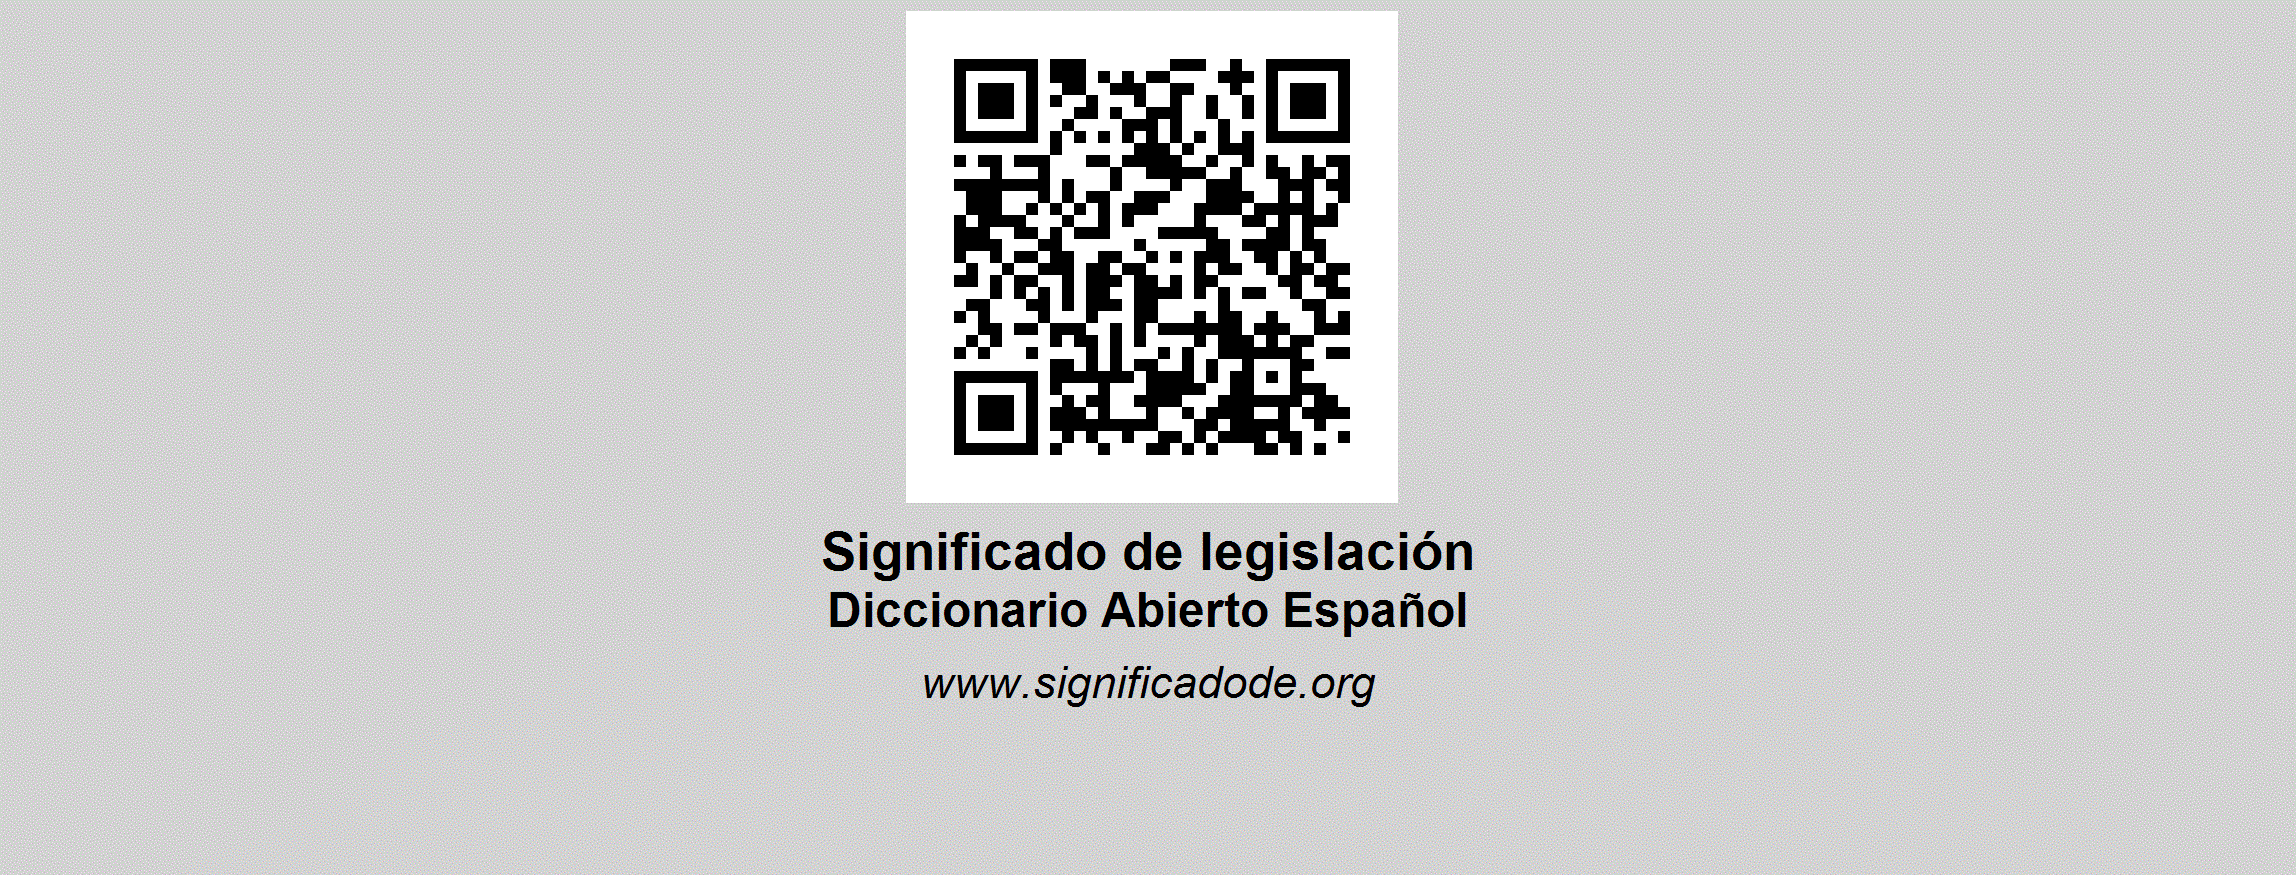 legislaci-n-diccionario-abierto-de-espa-ol